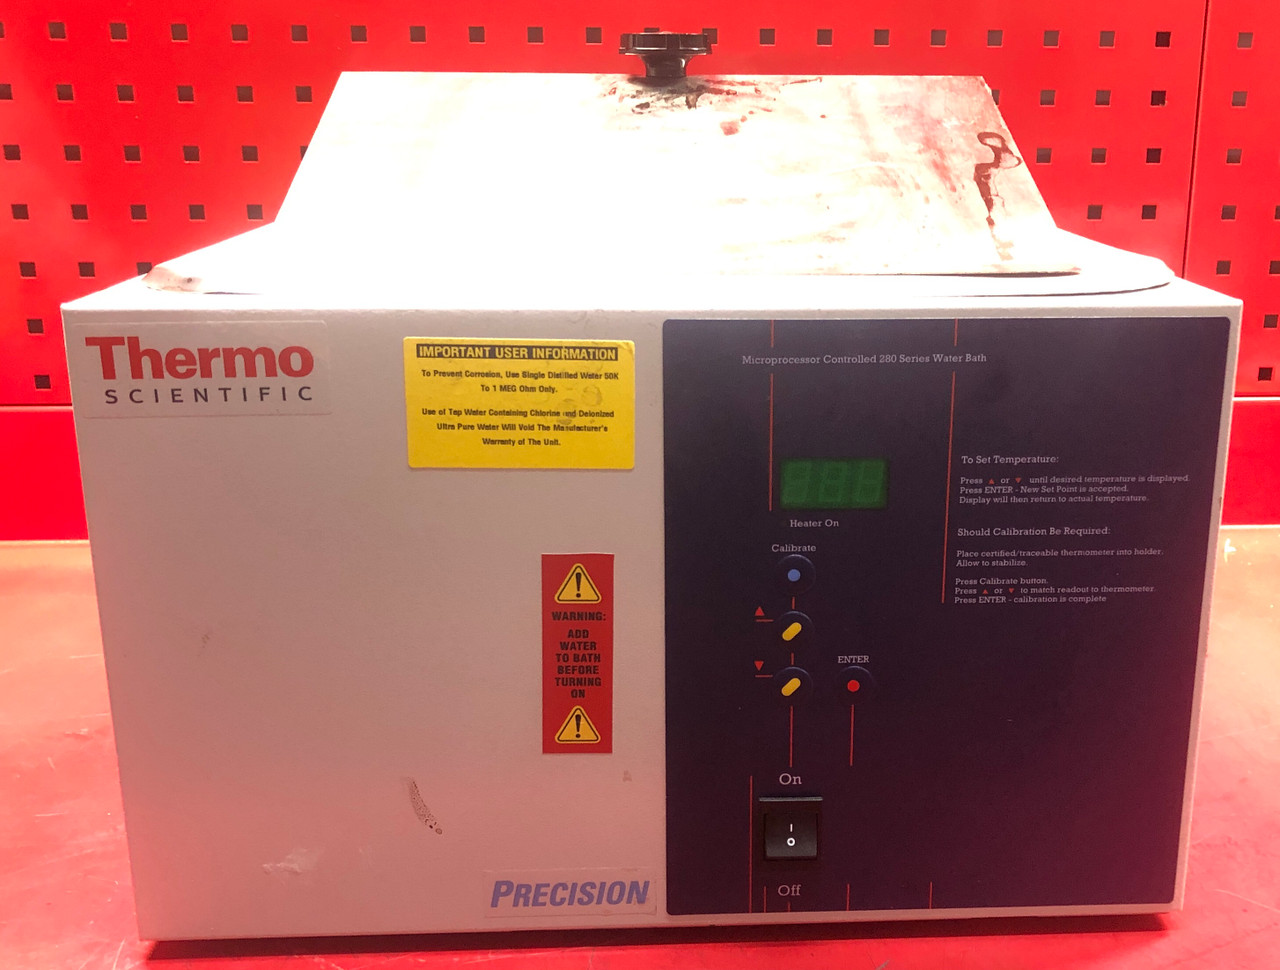 Thermo Scientific Precision Microprocessor Controlled 280 Series Water Bath